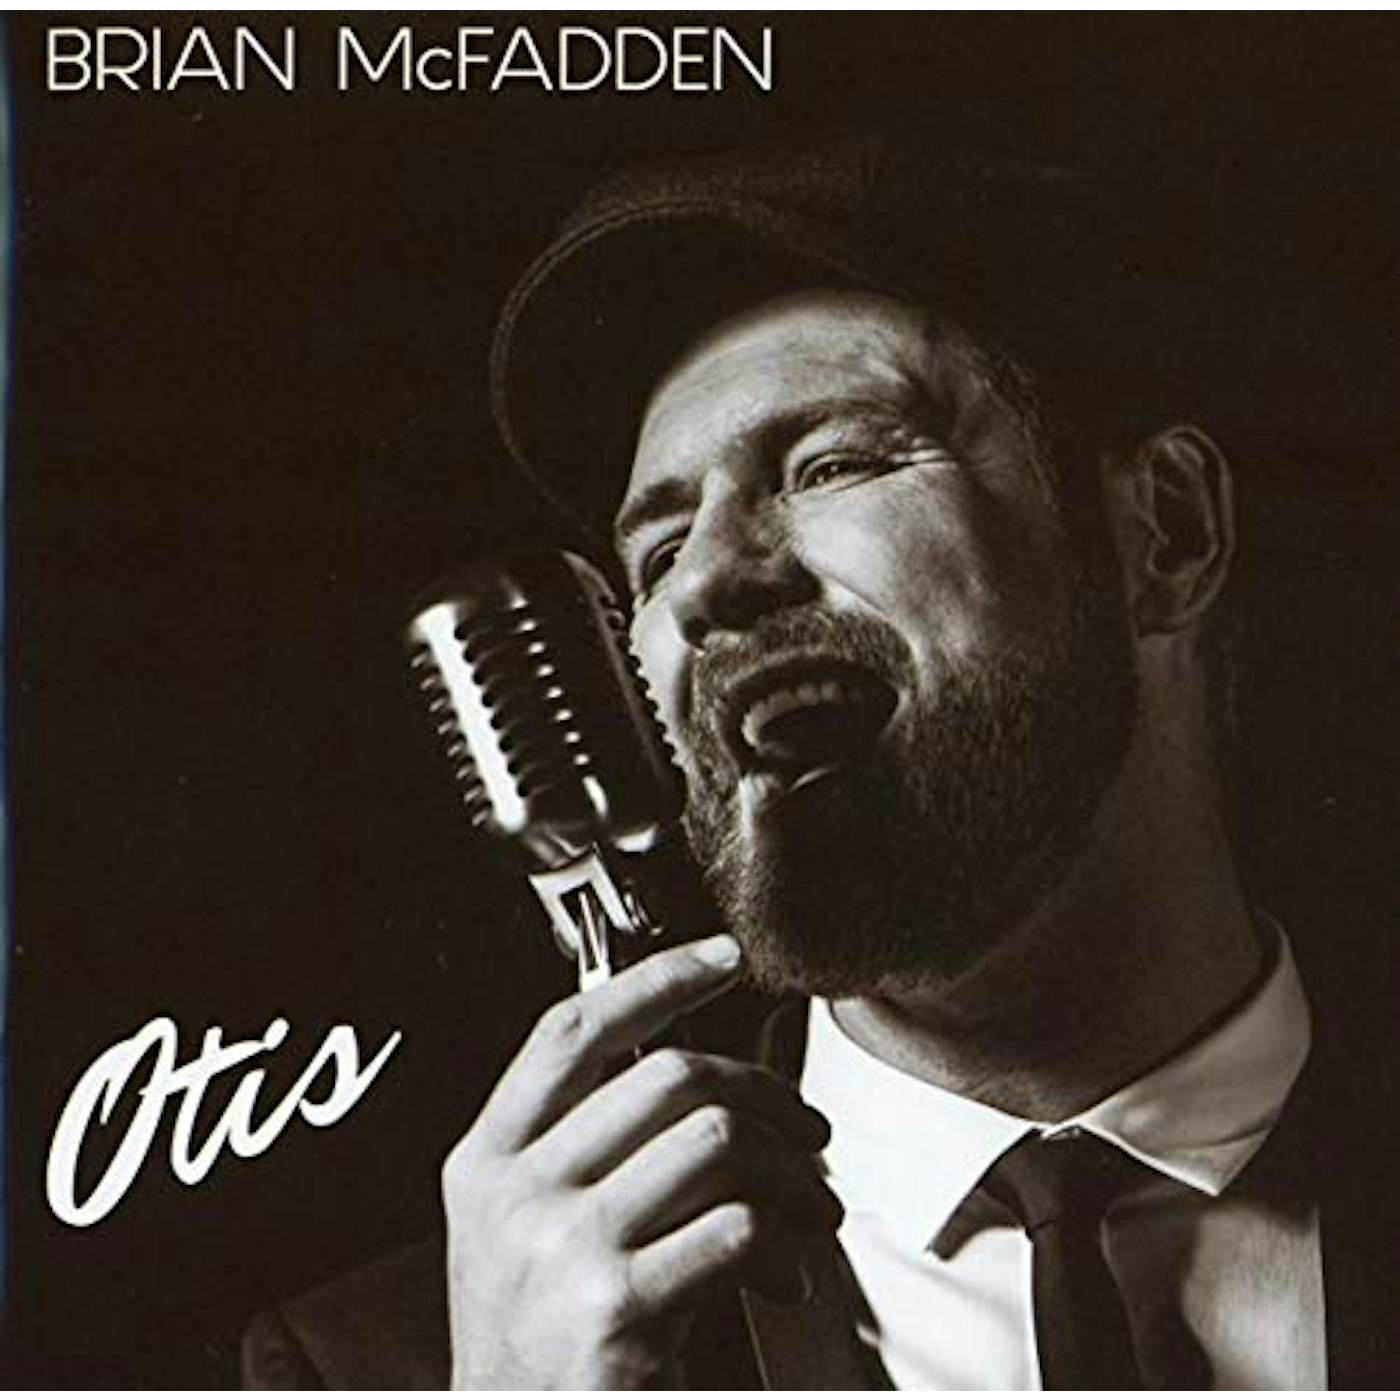 Brian McFadden OTIS CD